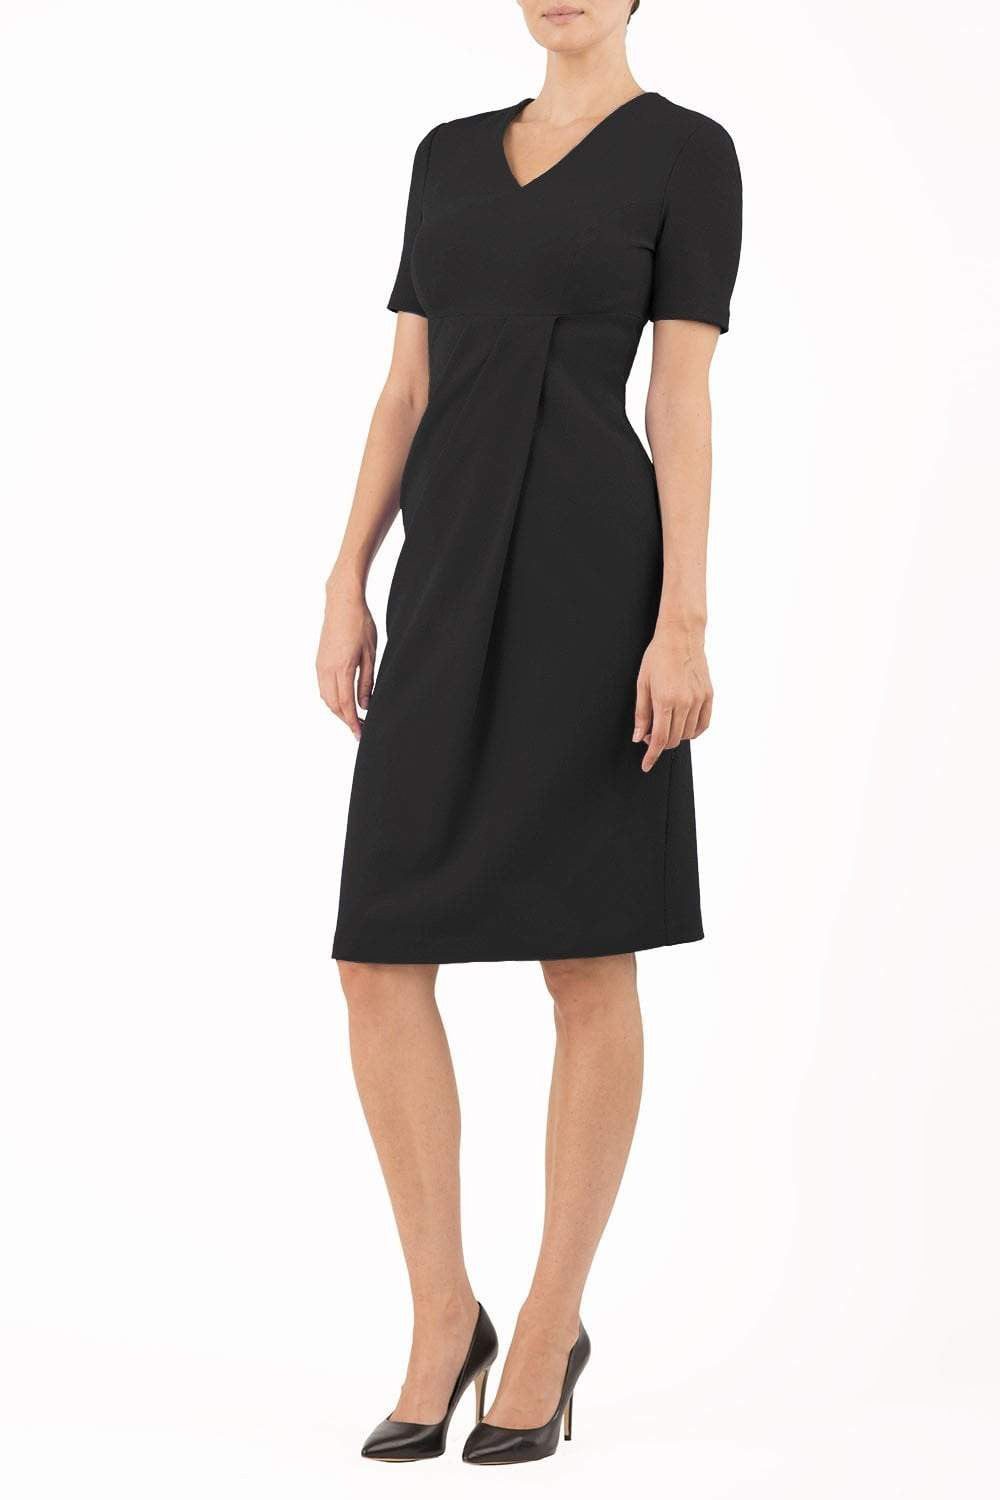 brunette model wearing diva catwalk tregony a-line dress with lowered v-neckline in black and short sleeves front